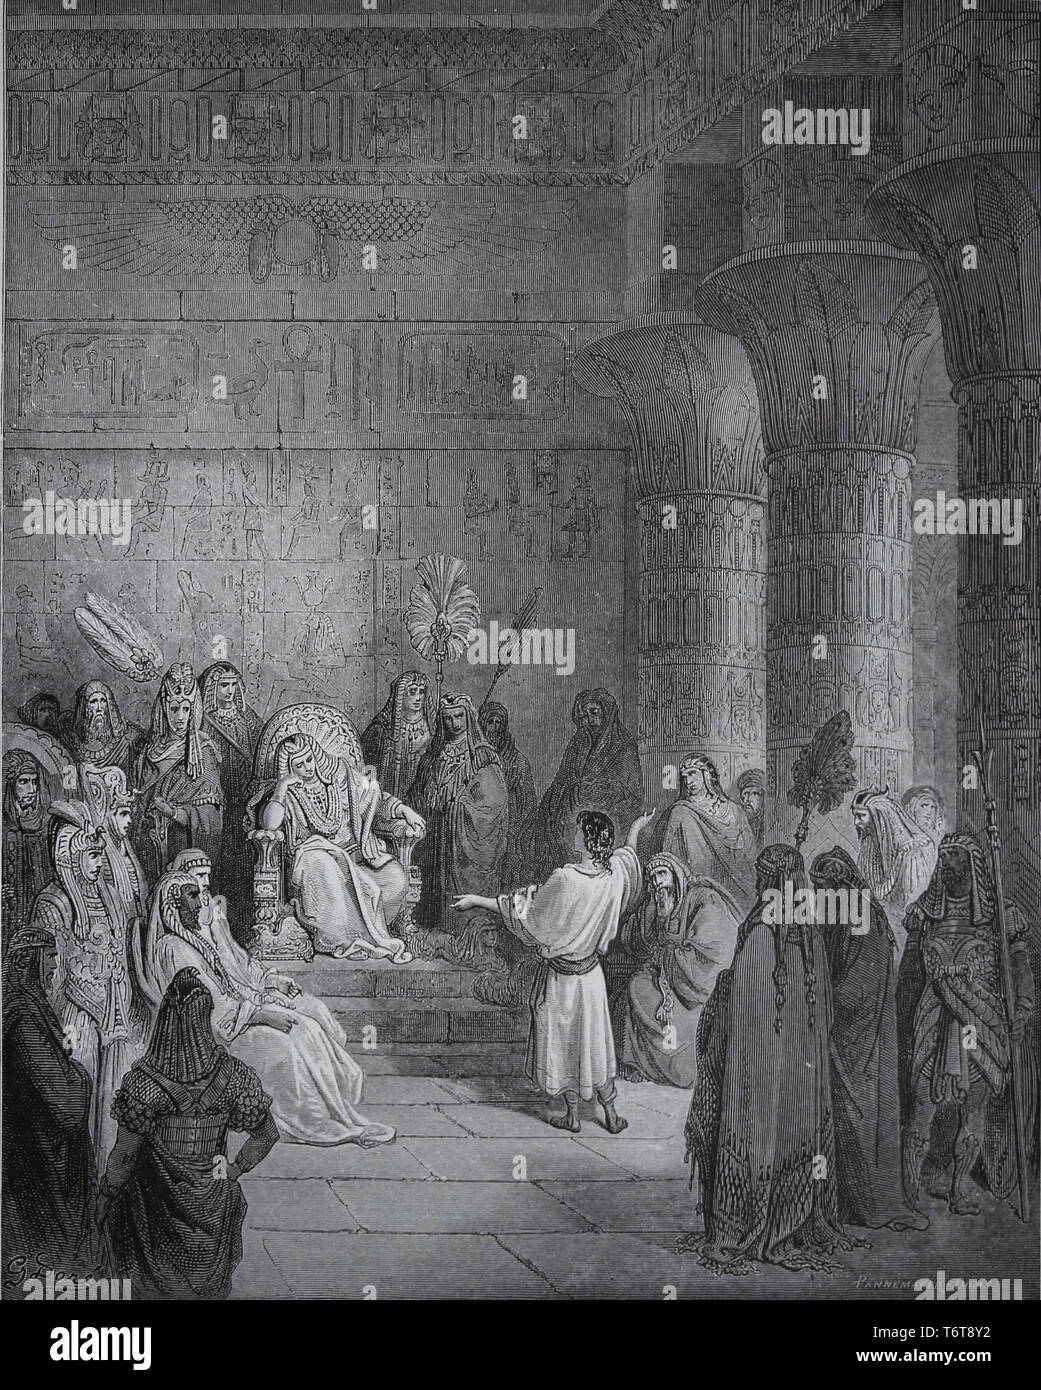 Joseph interprète le rêve de Pharaon. La Bible. Livre de la Genèse. Gravure de Gustave Dore, 1866. Banque D'Images